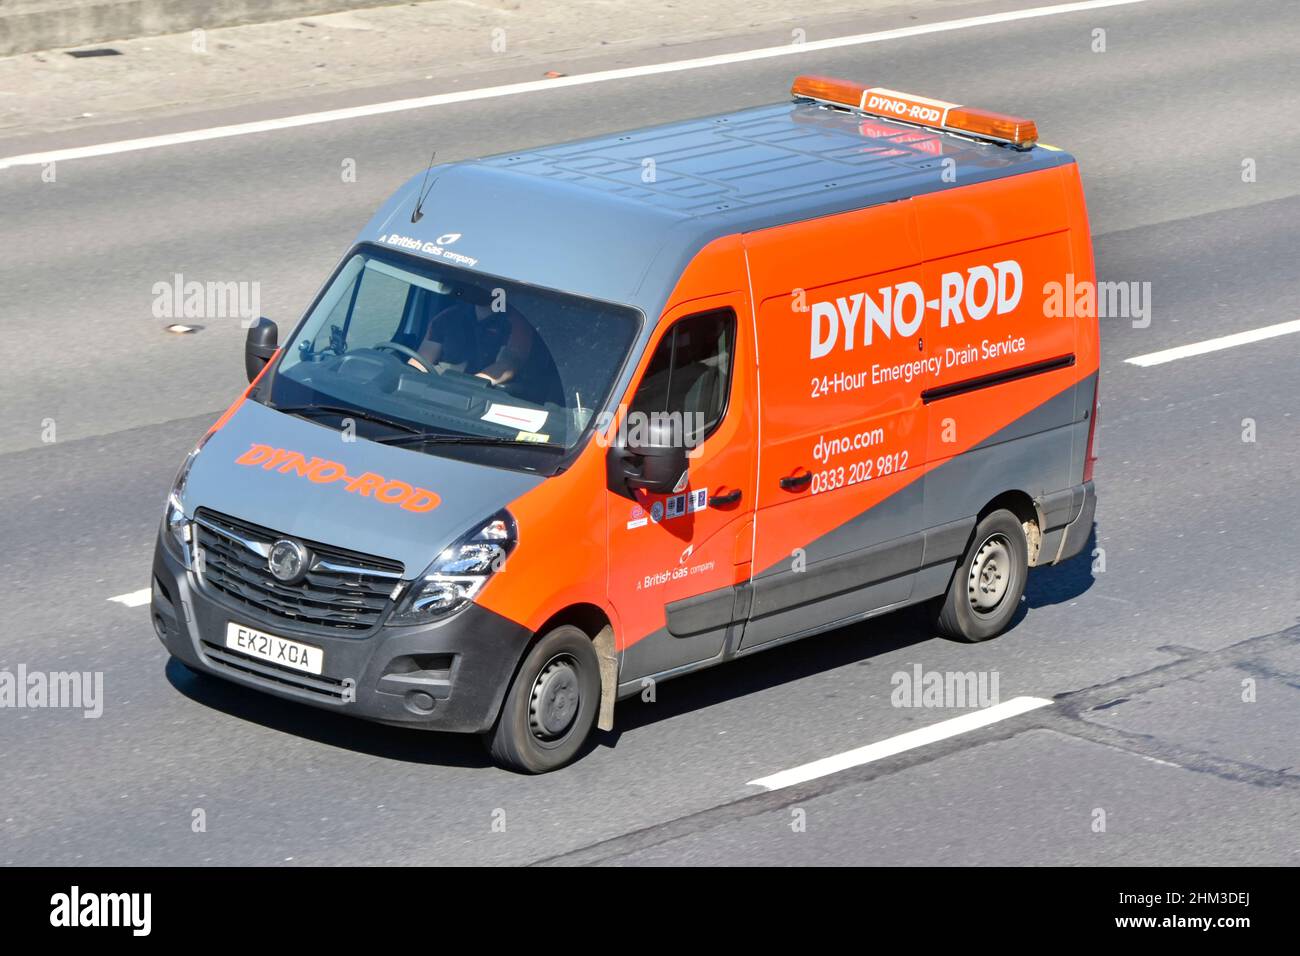 Vue latérale aérienne de la camionnette Dyno Rod et du chauffeur une entreprise britannique de gaz annonçant un service de vidange d'urgence 24 heures sur 24 dans un véhicule conduisant l'autoroute 0n au royaume-uni Banque D'Images